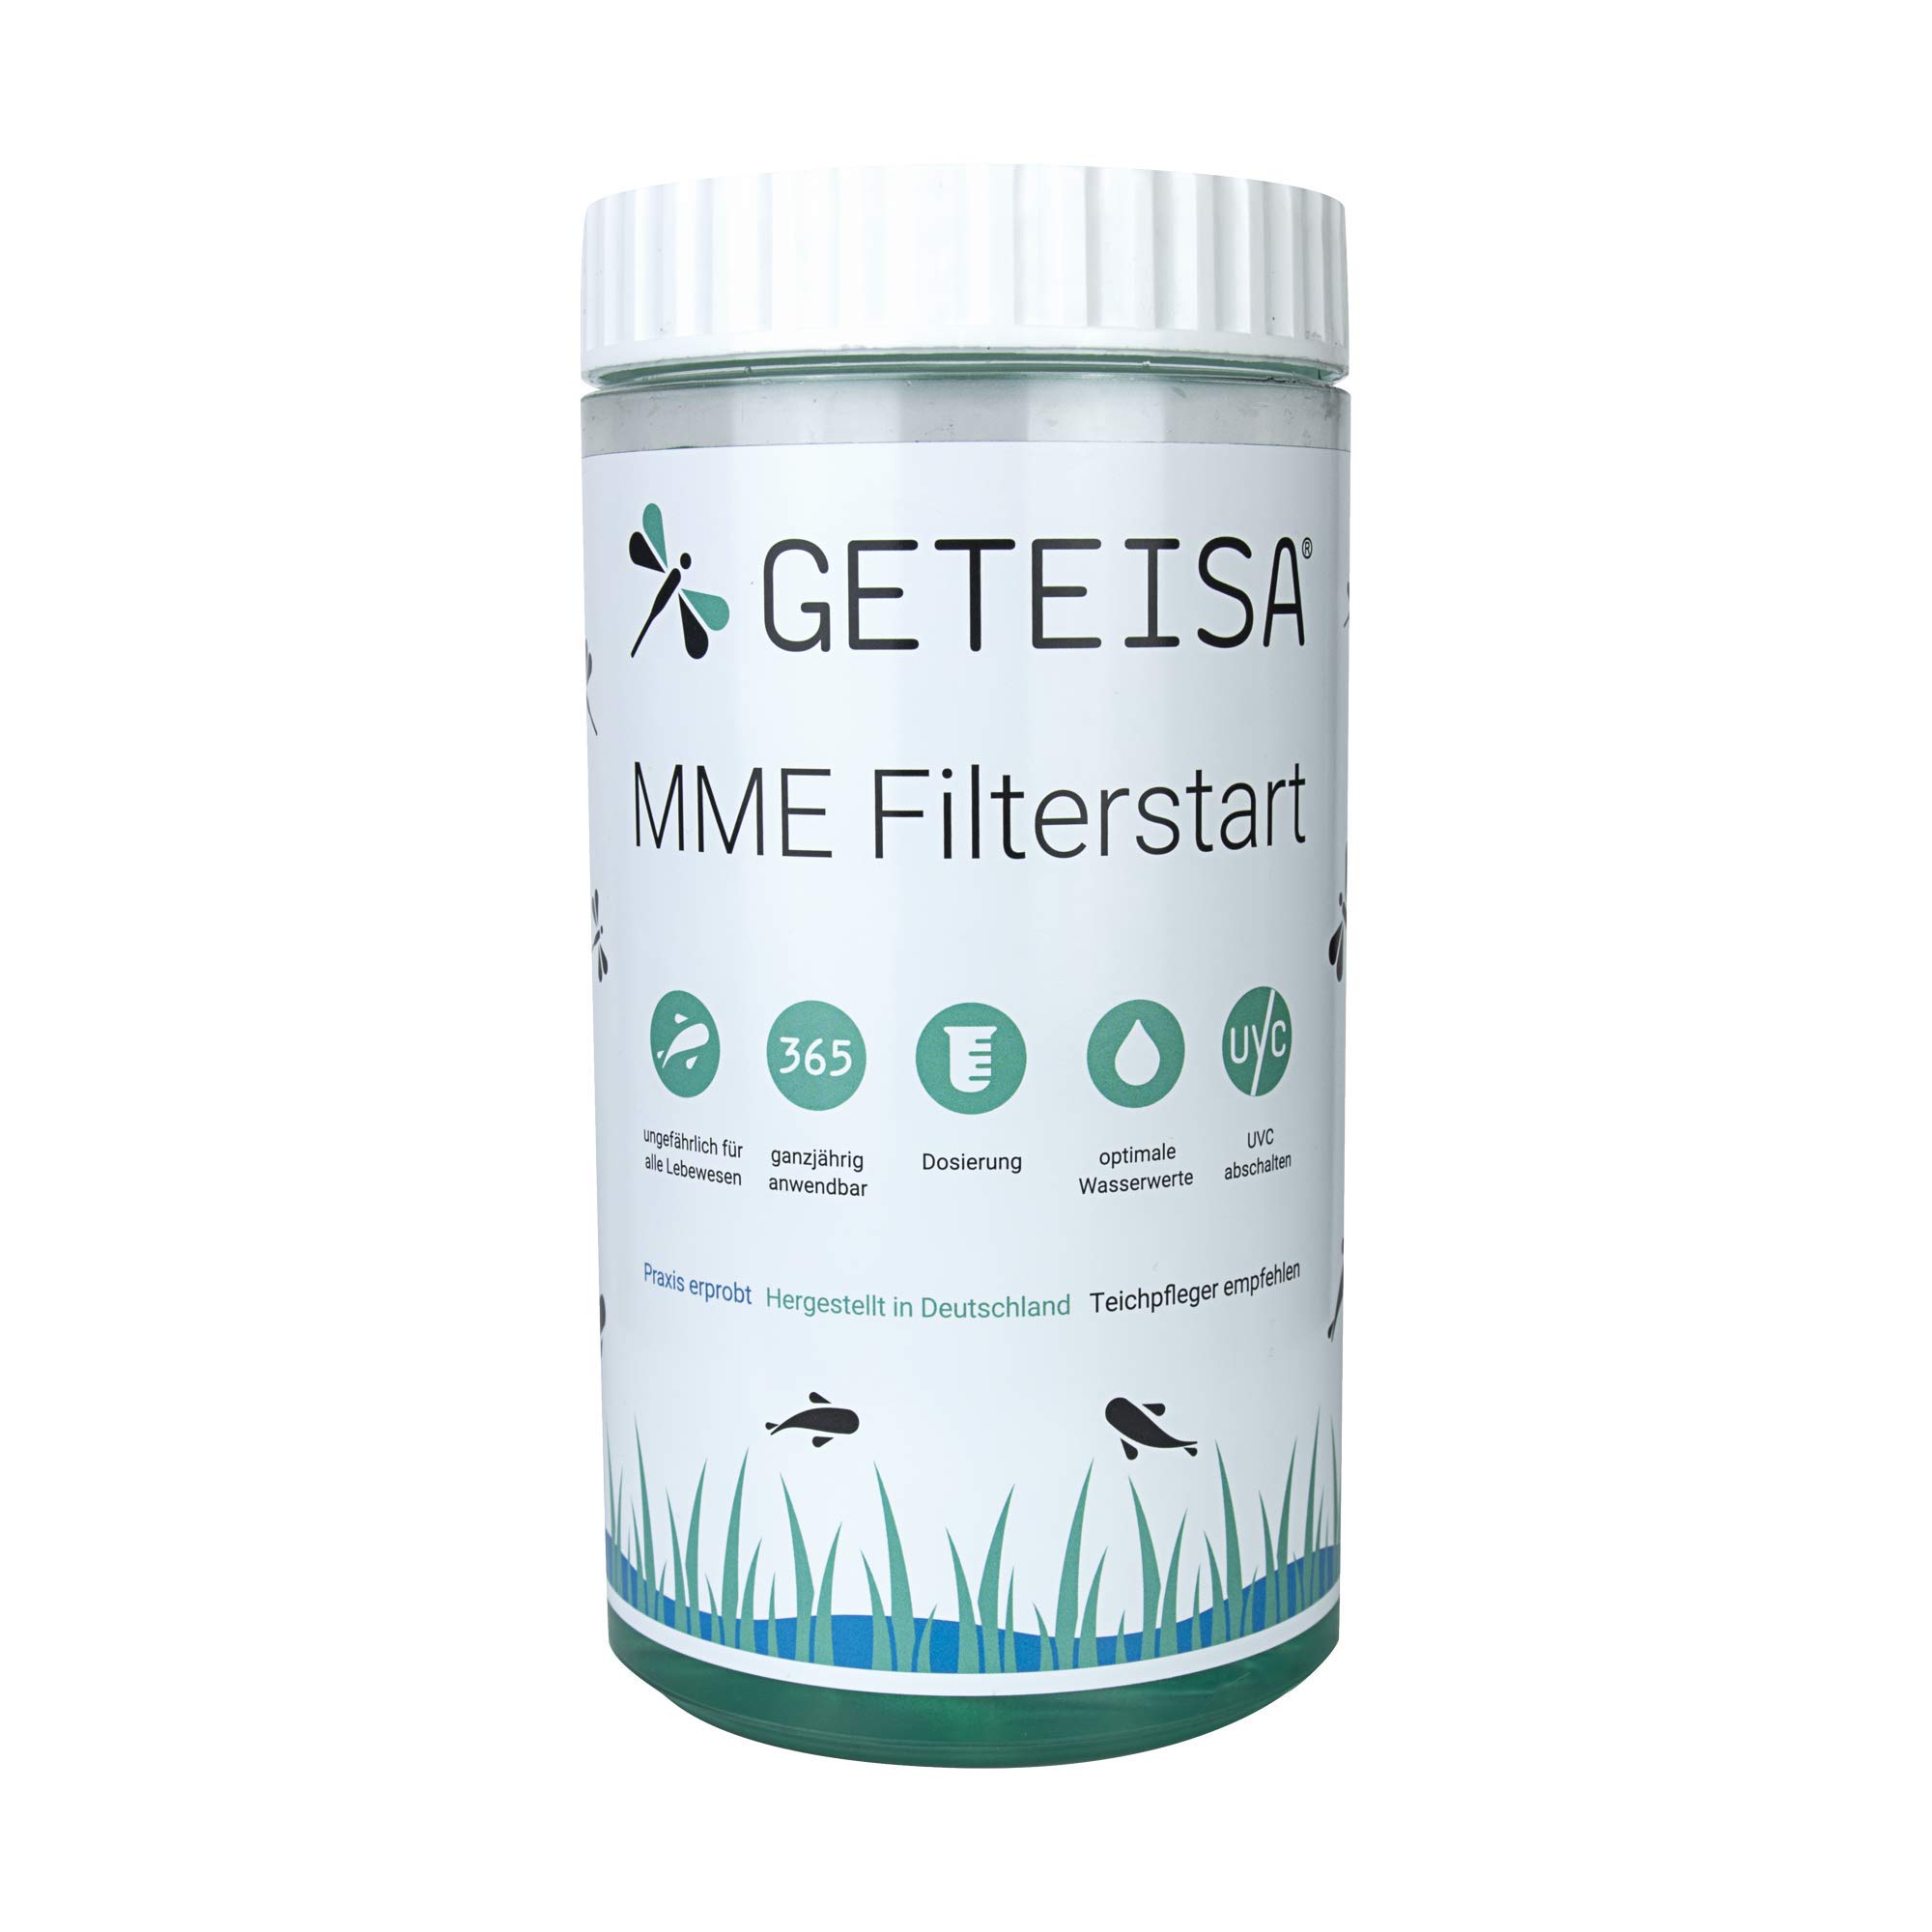 GETEISA MME Filterstart 1,0 Liter - Effektive Starterbakterien für Teichfilter, Beschleunigt Filterbiologie-Aufbau, Ideal für Gartenteich und Fischteich, Ungiftig, Made in Germany